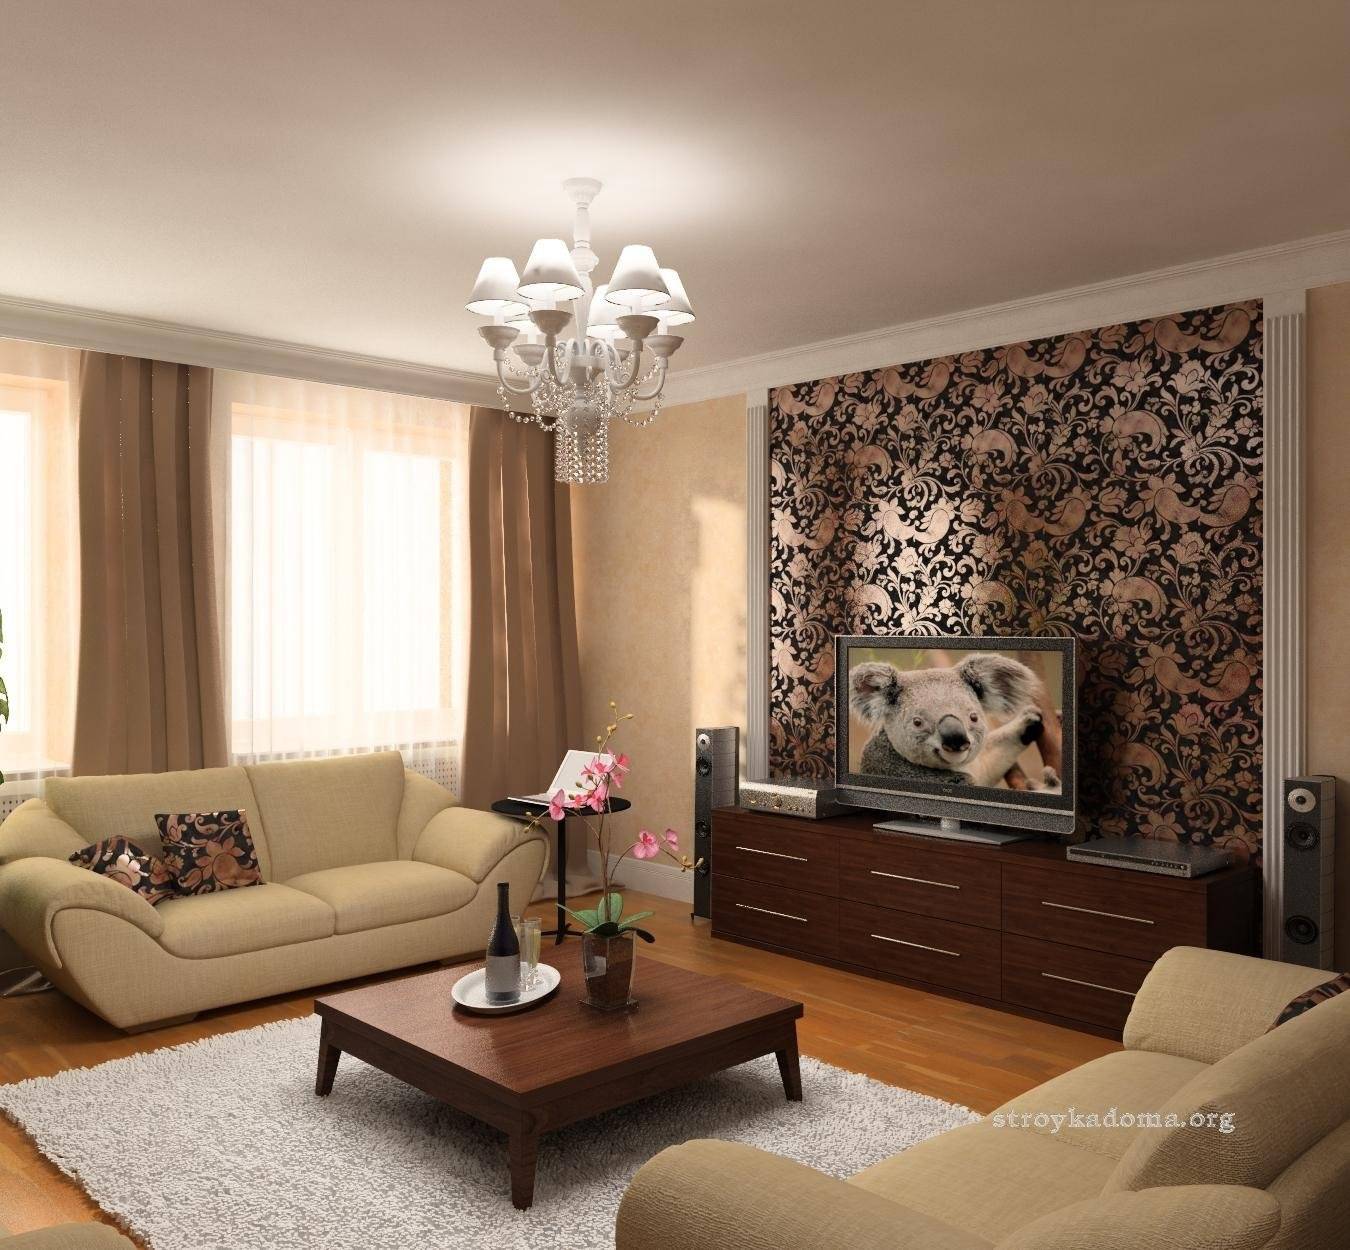 Интерьер гостиной комнаты эконом класса в современном стиле: фото идеи